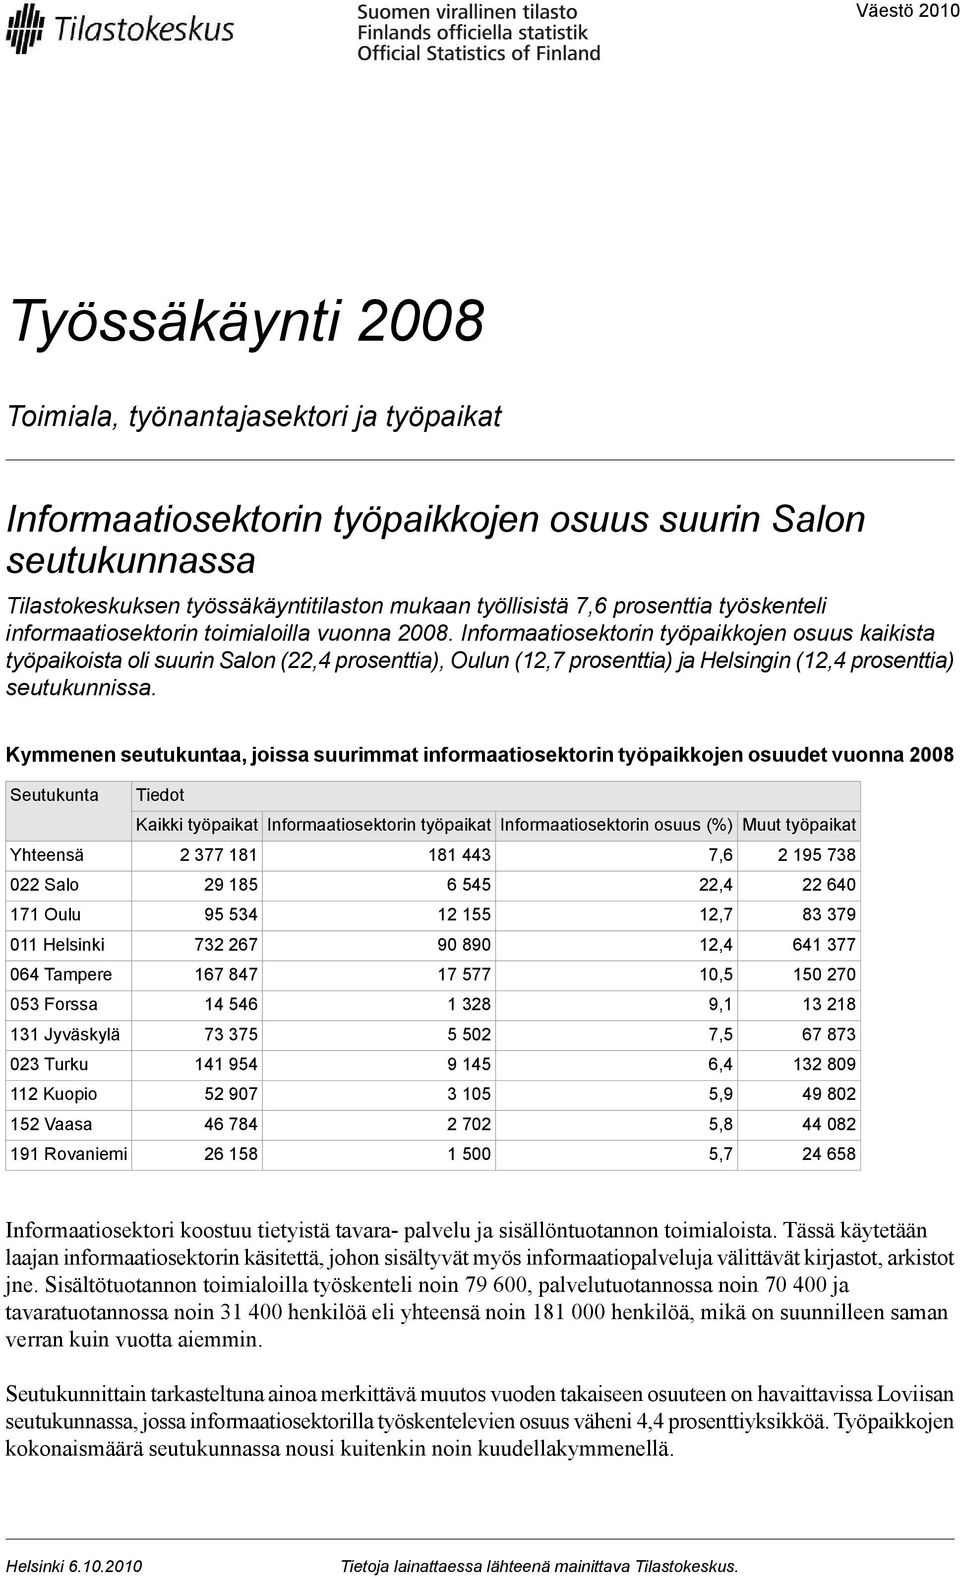 Informaatiosektorin työpaikkojen osuus kaikista työpaikoista oli suurin Salon (22,4 prosenttia), Oulun (12,7 prosenttia) ja Helsingin (12,4 prosenttia) seutukunnissa.